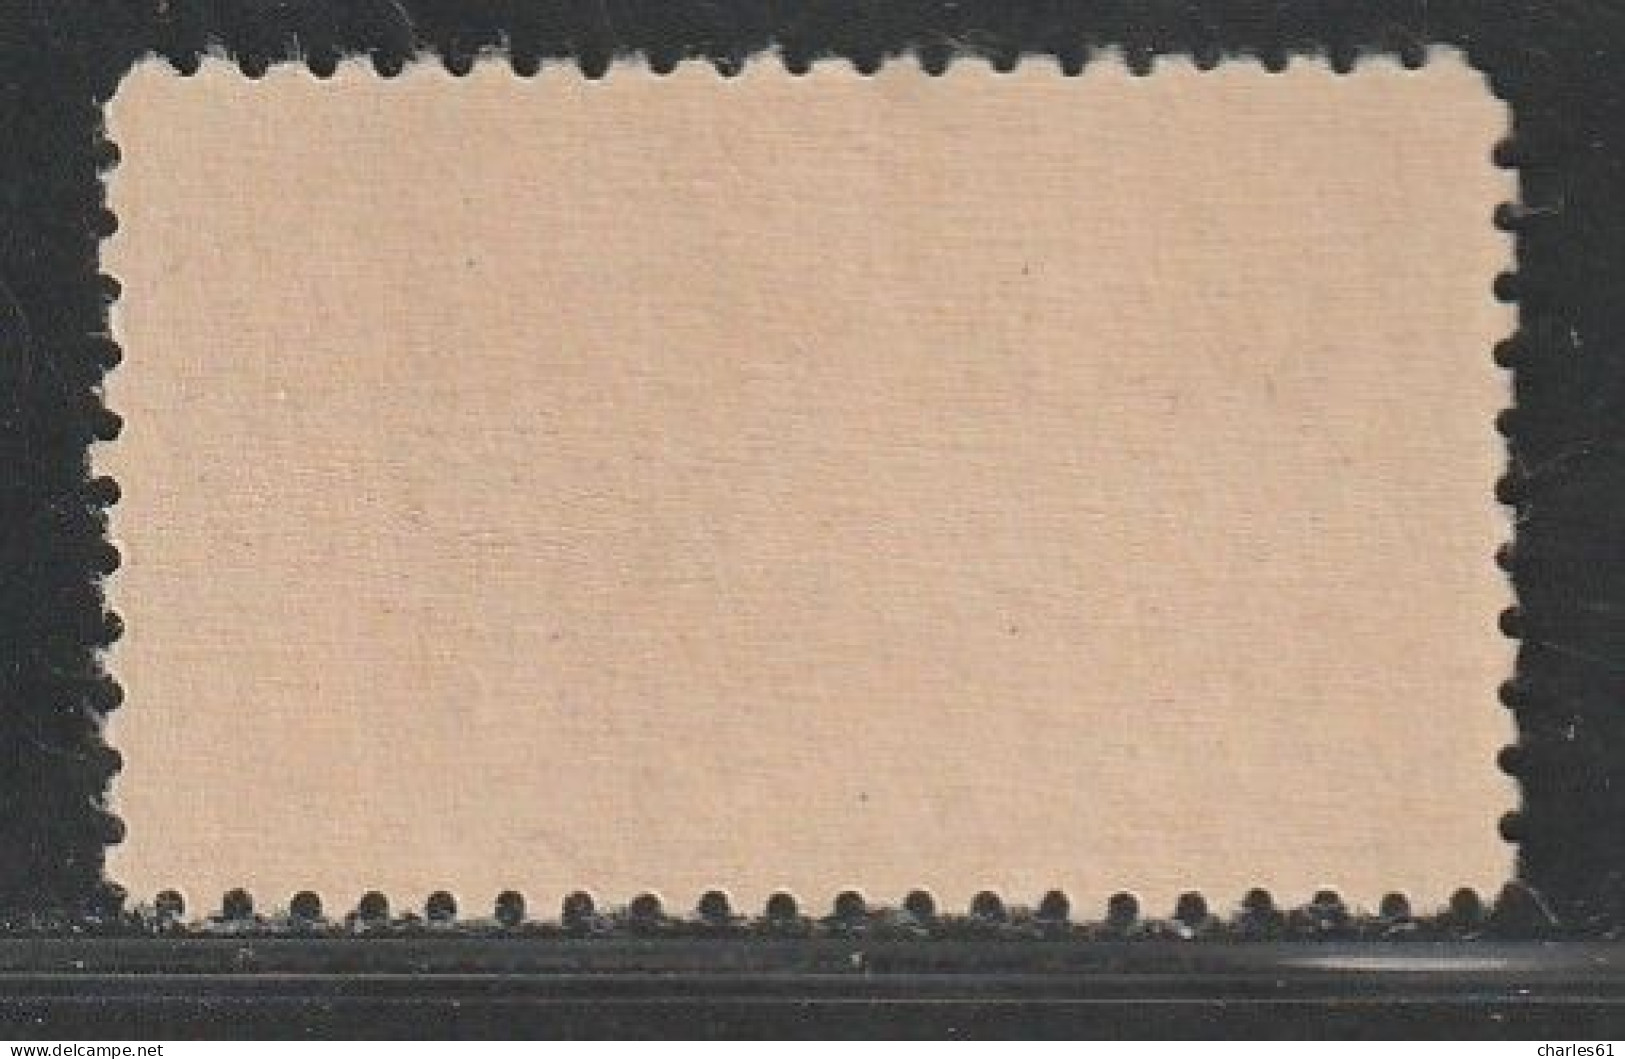 ALGERIE - COLIS POSTAUX - N°11Aa ** (1924-27) 15c Orange - Sans Surcharge "CONTROLE REPARTITEUR" - Postpaketten